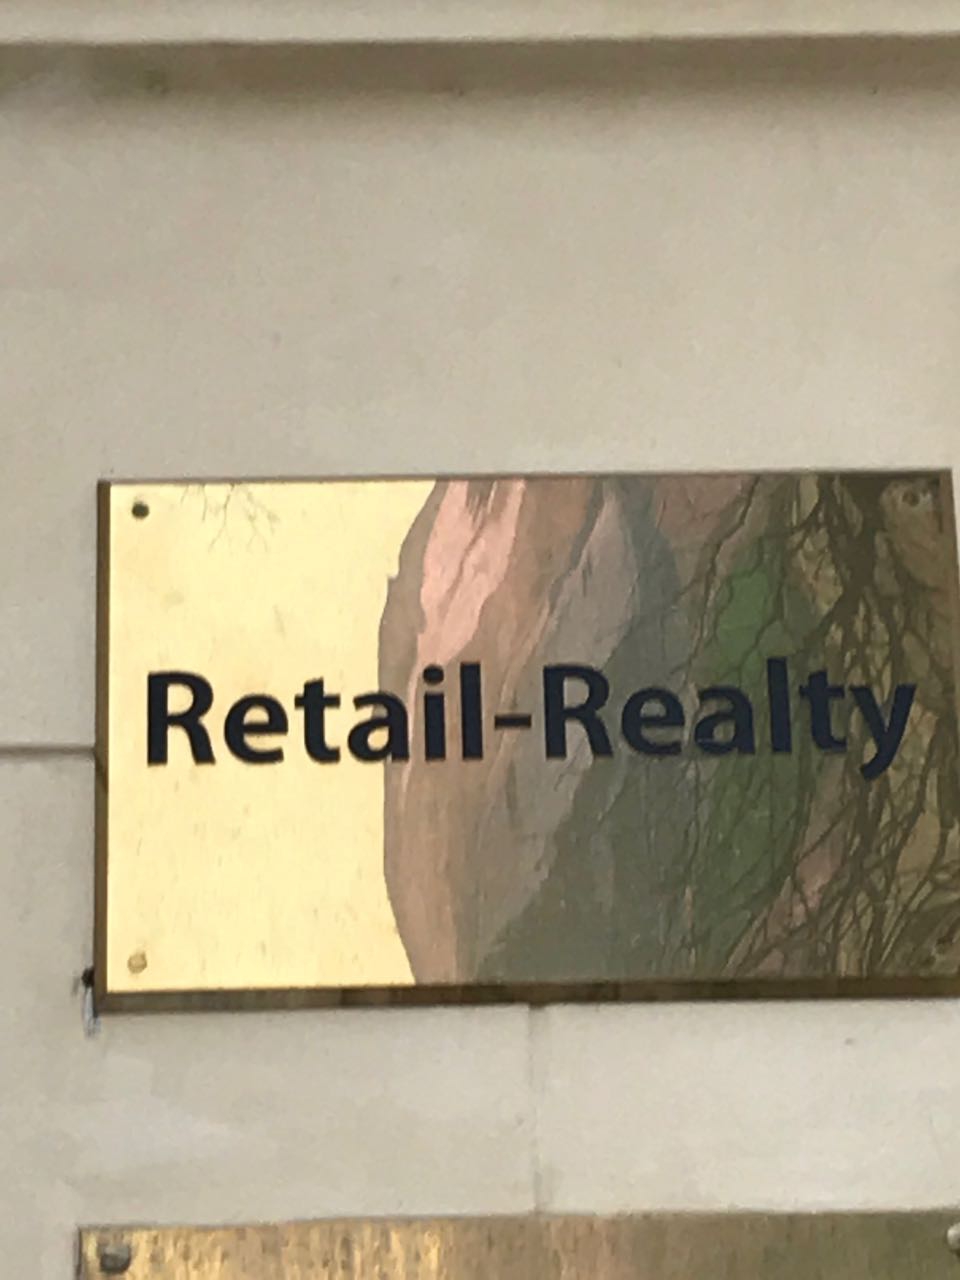 Retail-Realty Агентство недвижимости - все супер